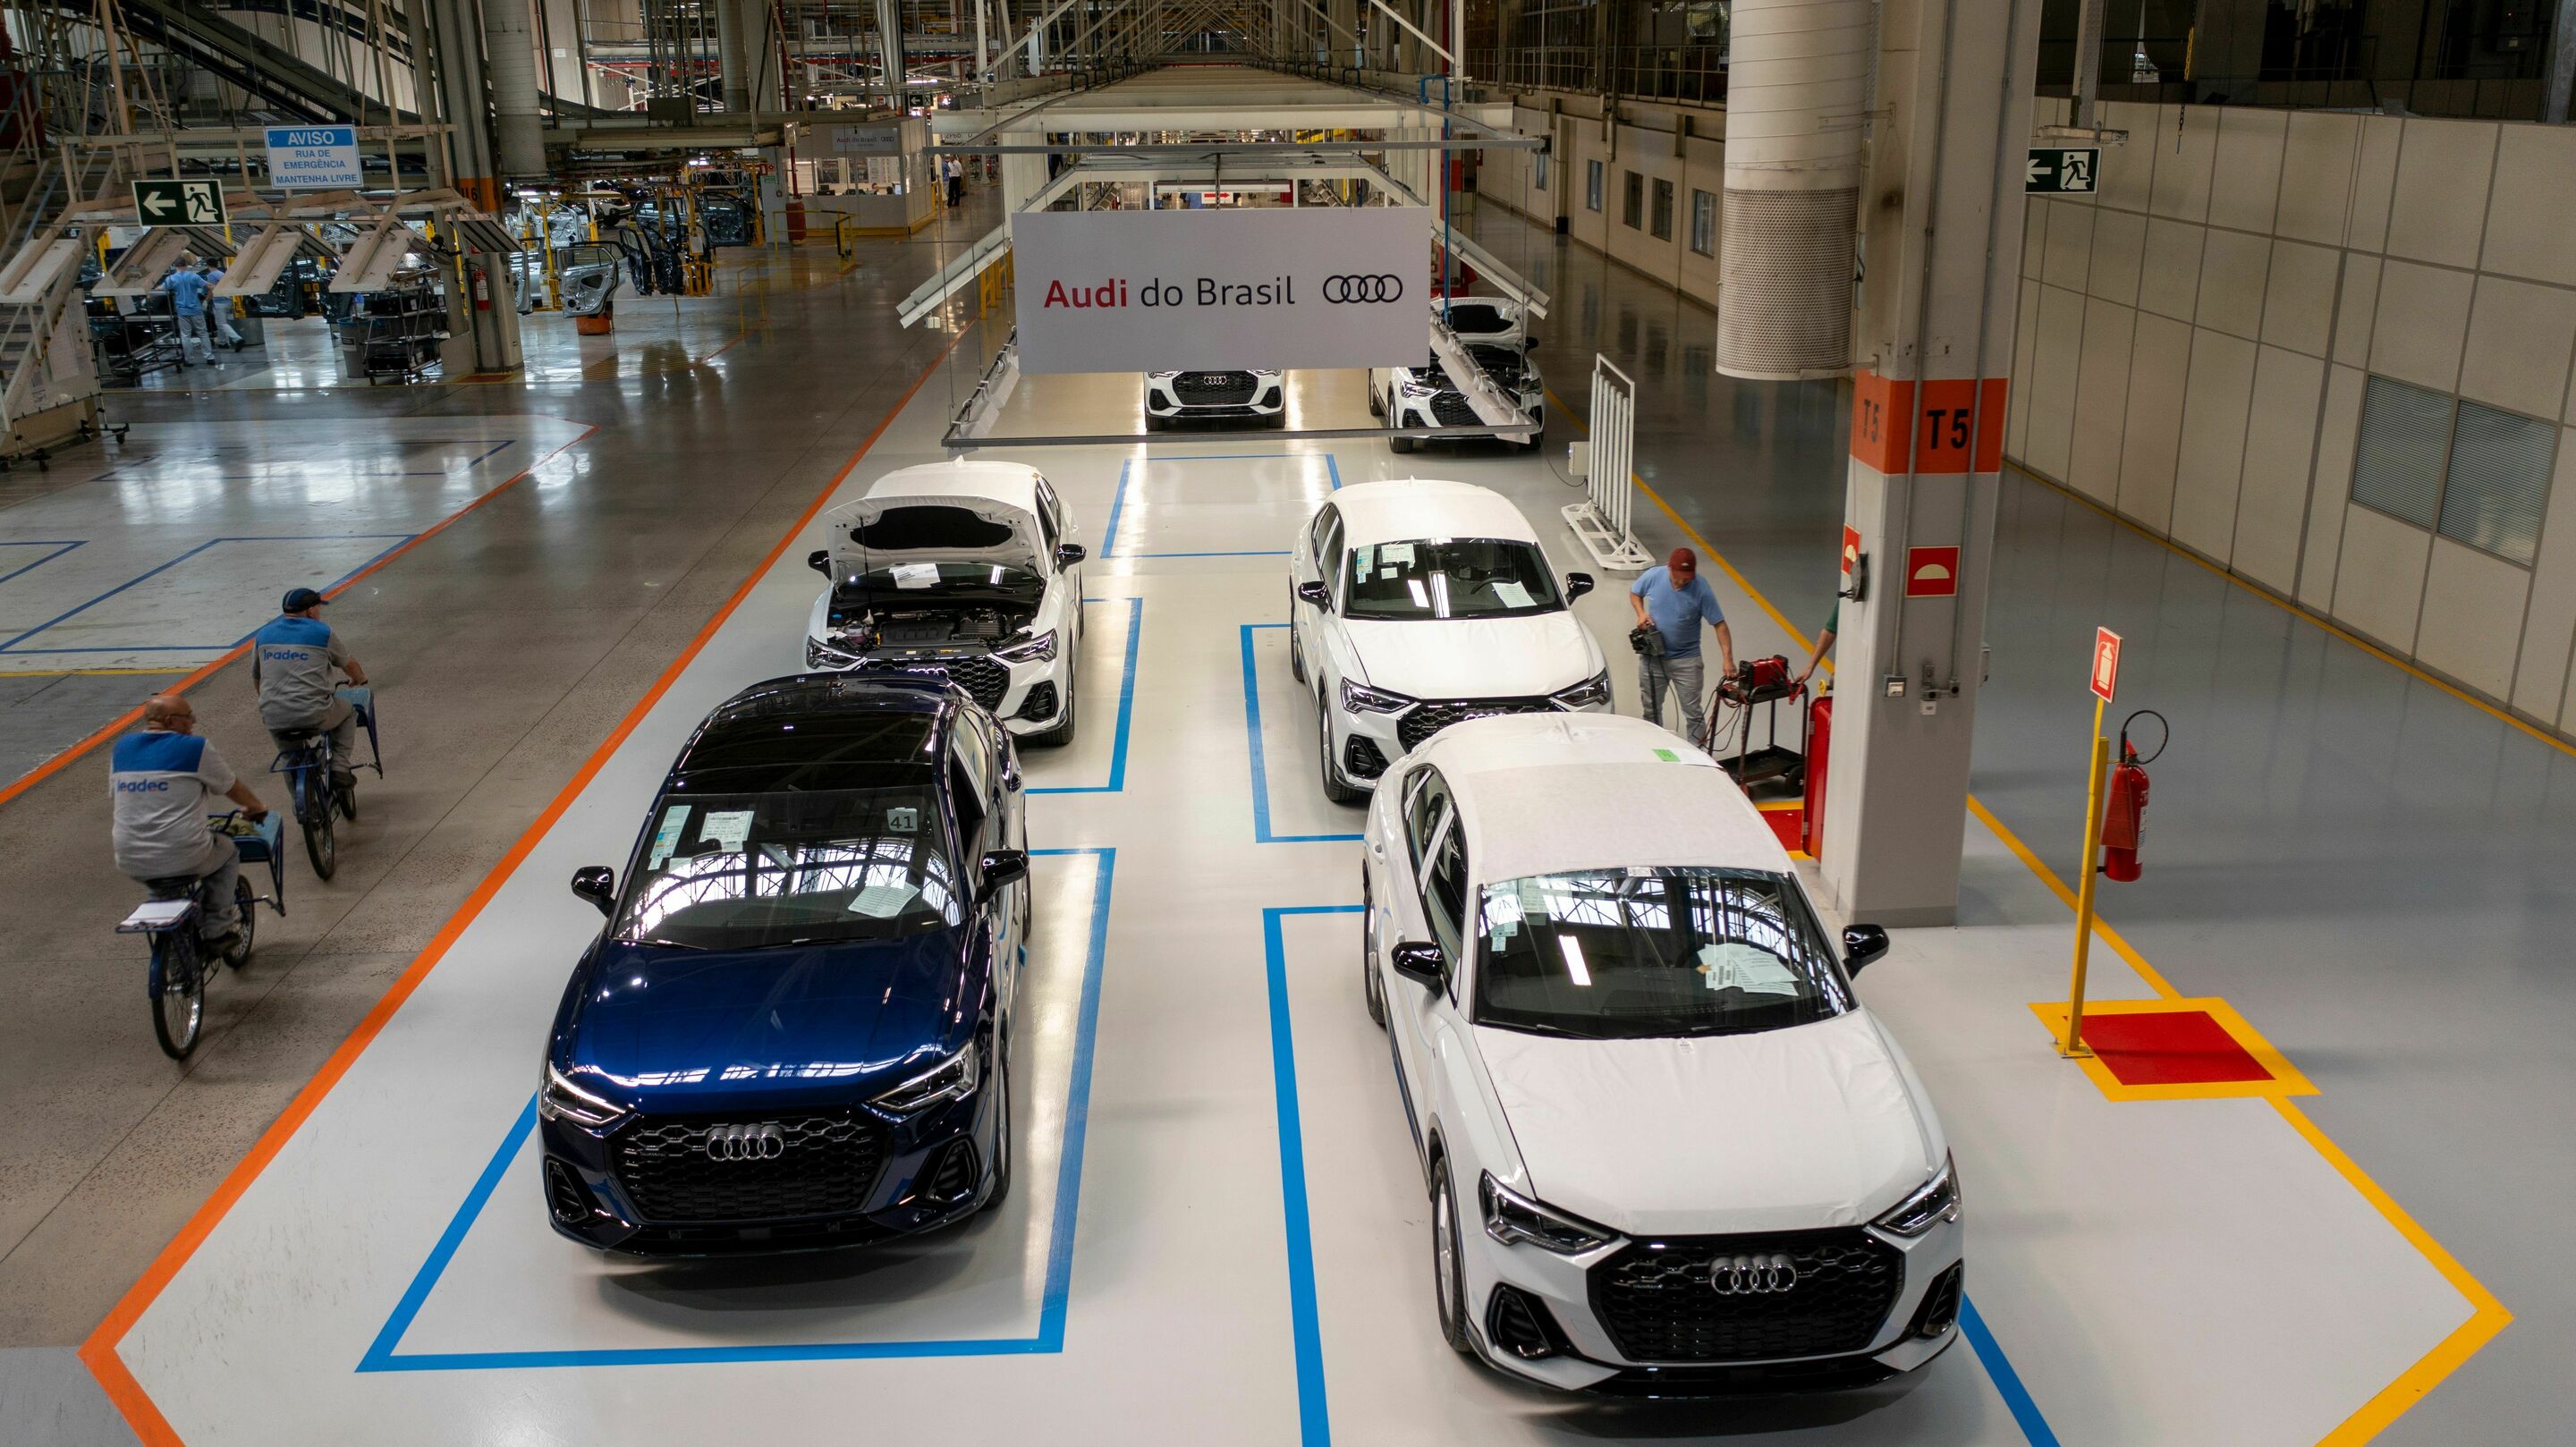 Audi do Brasil nimmt die Produktion im Werk in Paraná mit dem neuen Audi Q3 und Q3 Sportback wieder auf